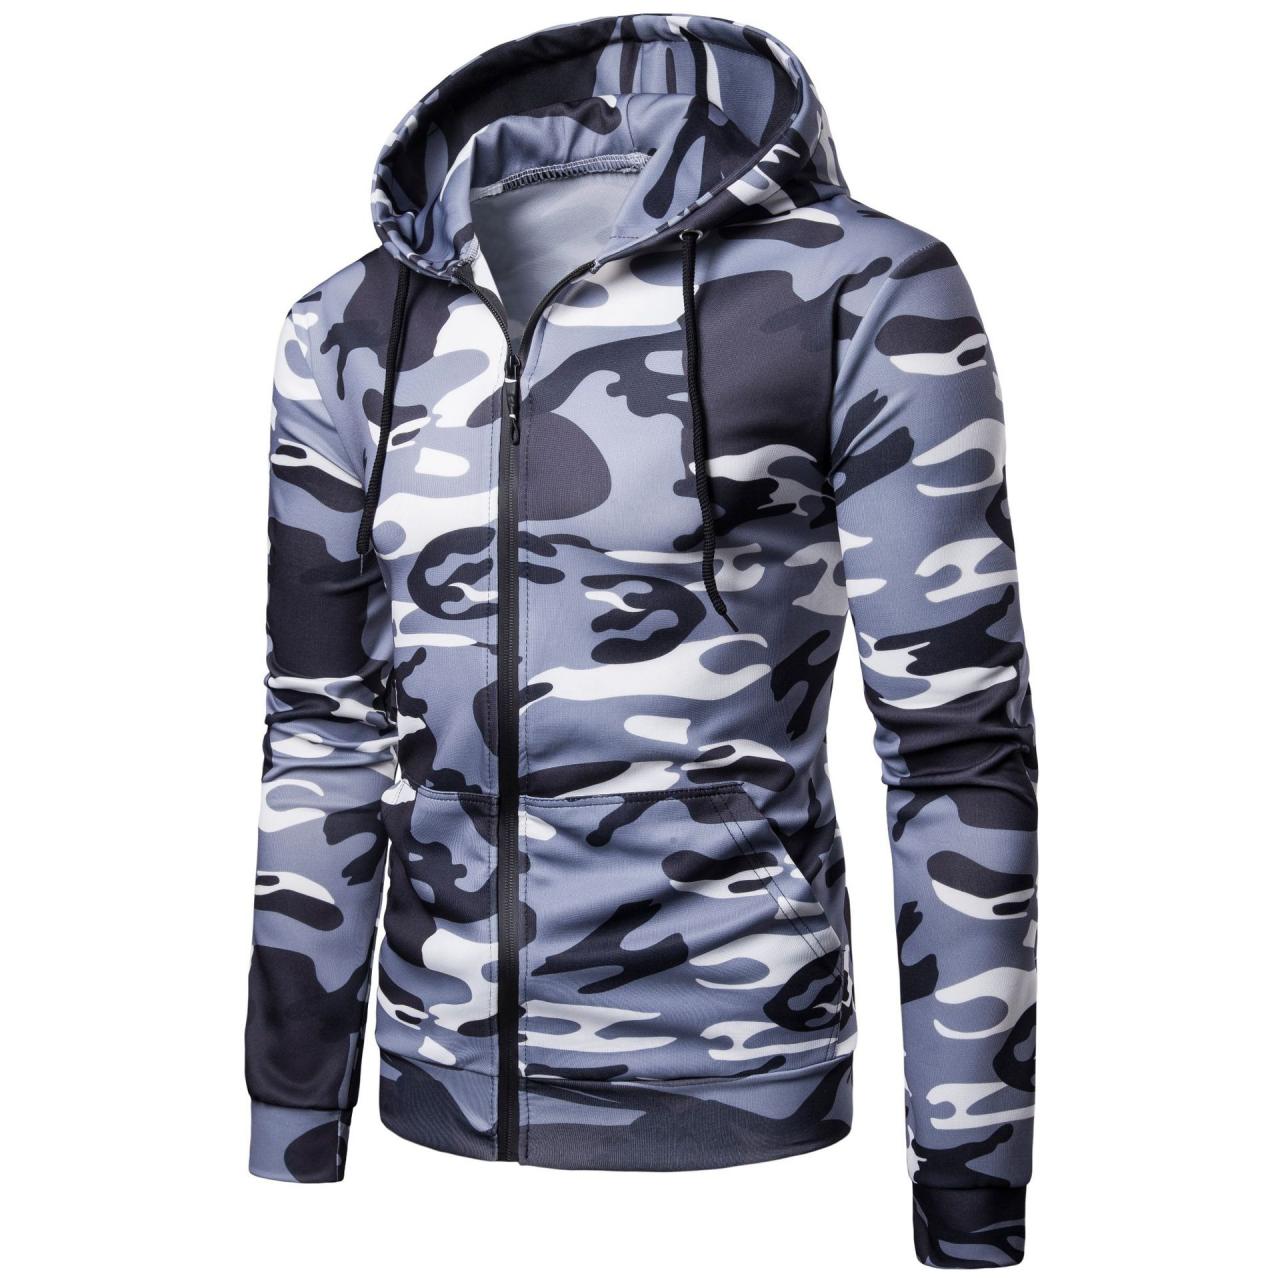 Men Camouflage Coat Spring Autumn Thin Slim Long Sleeve Zipper Hooded Jacket Windbreaker Outwear gray